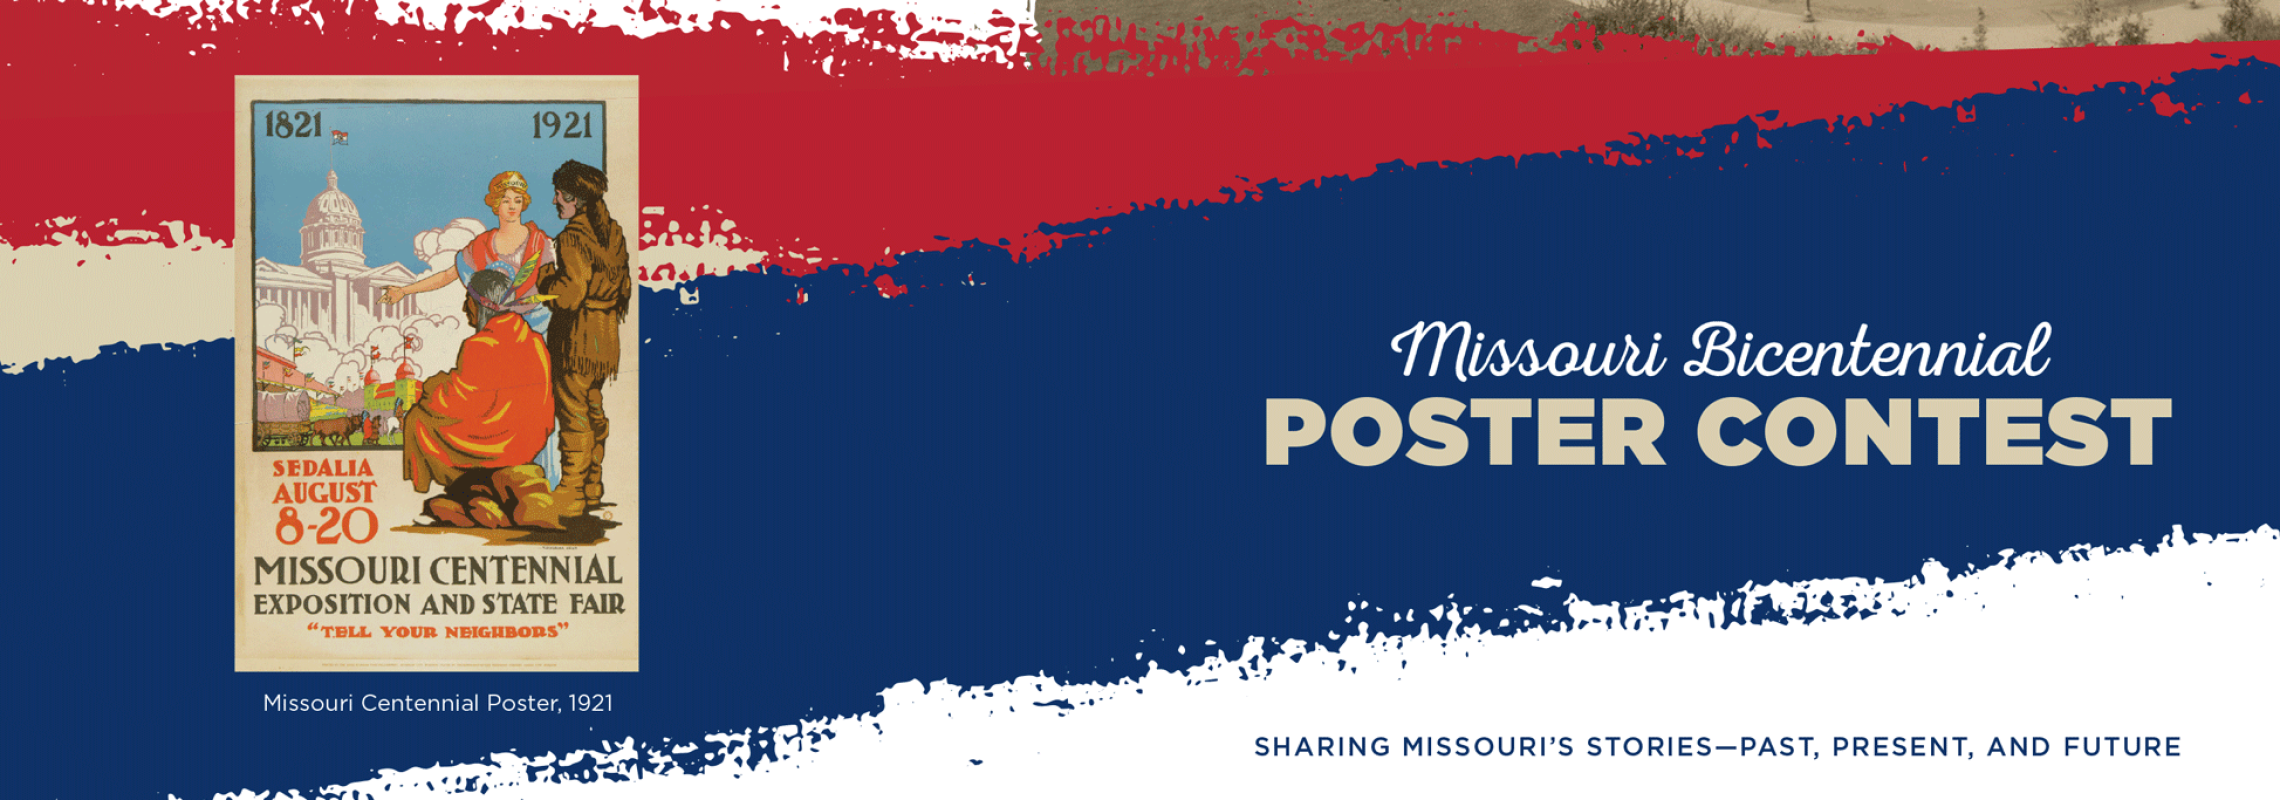 Missouri Bicentennial Poster Contest Brochure detail